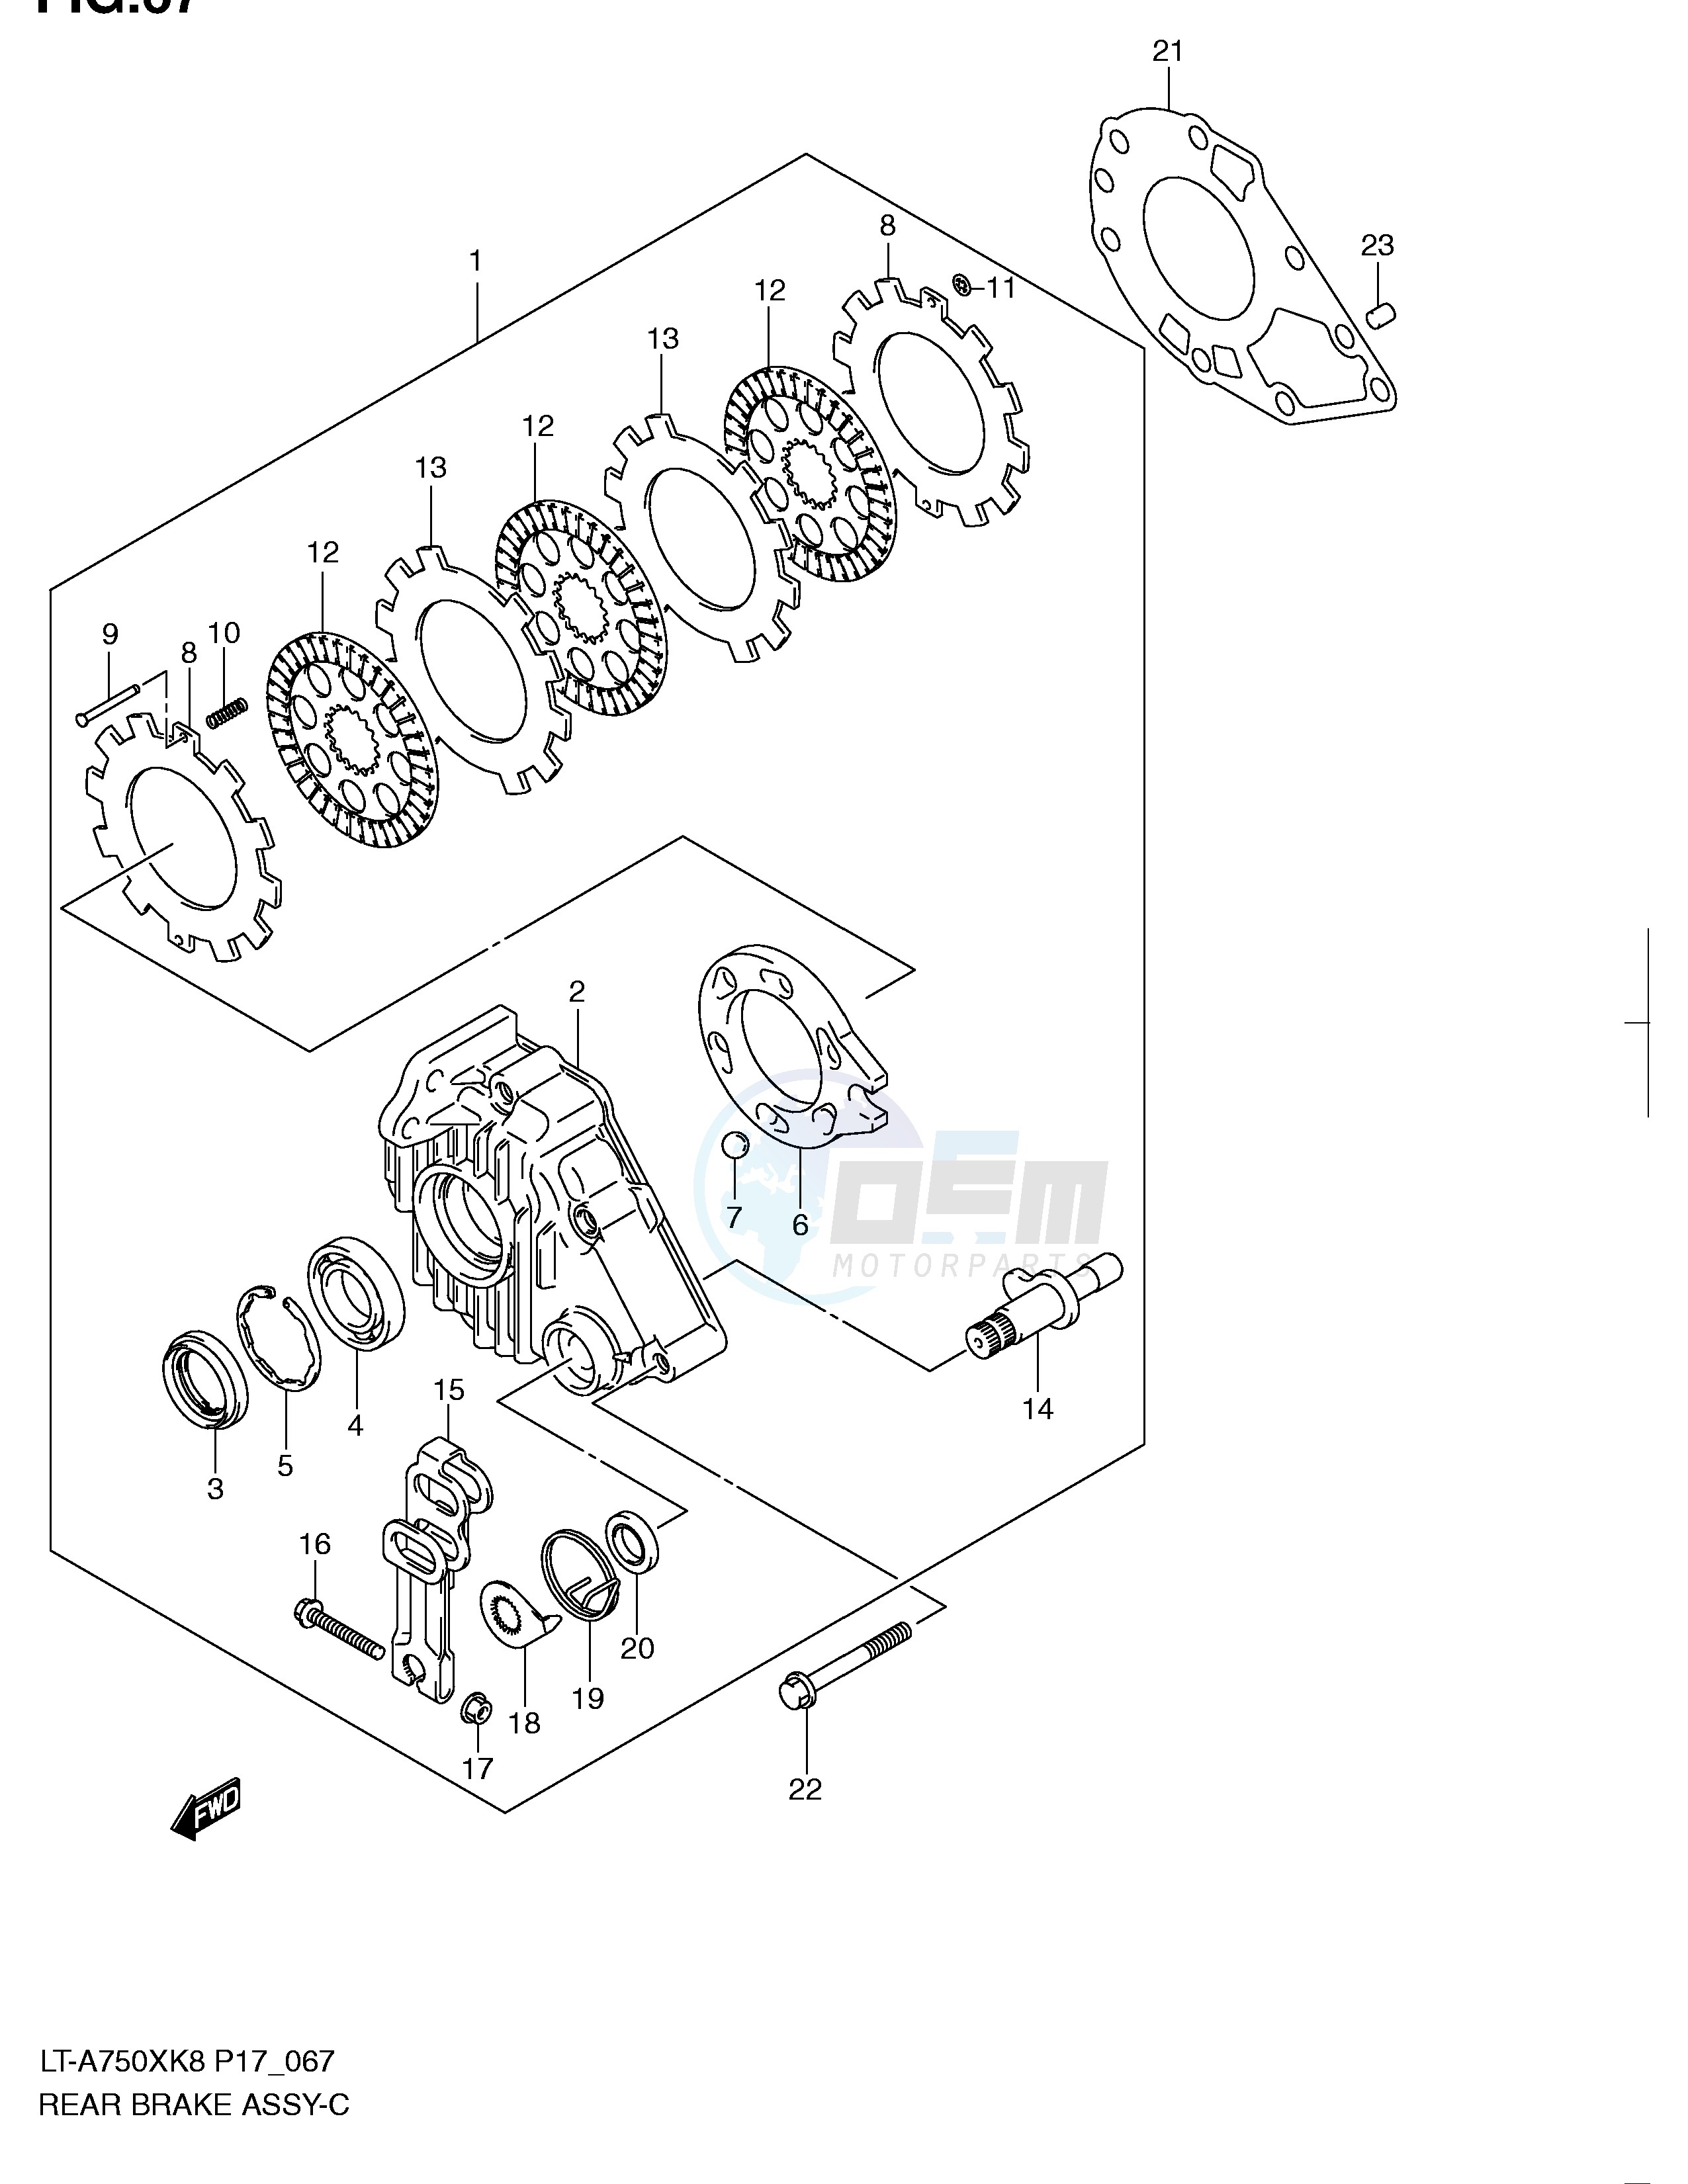 REAR BRAKE ASSY (LT-A750XK8 XZK8 XK9 XZK9) blueprint